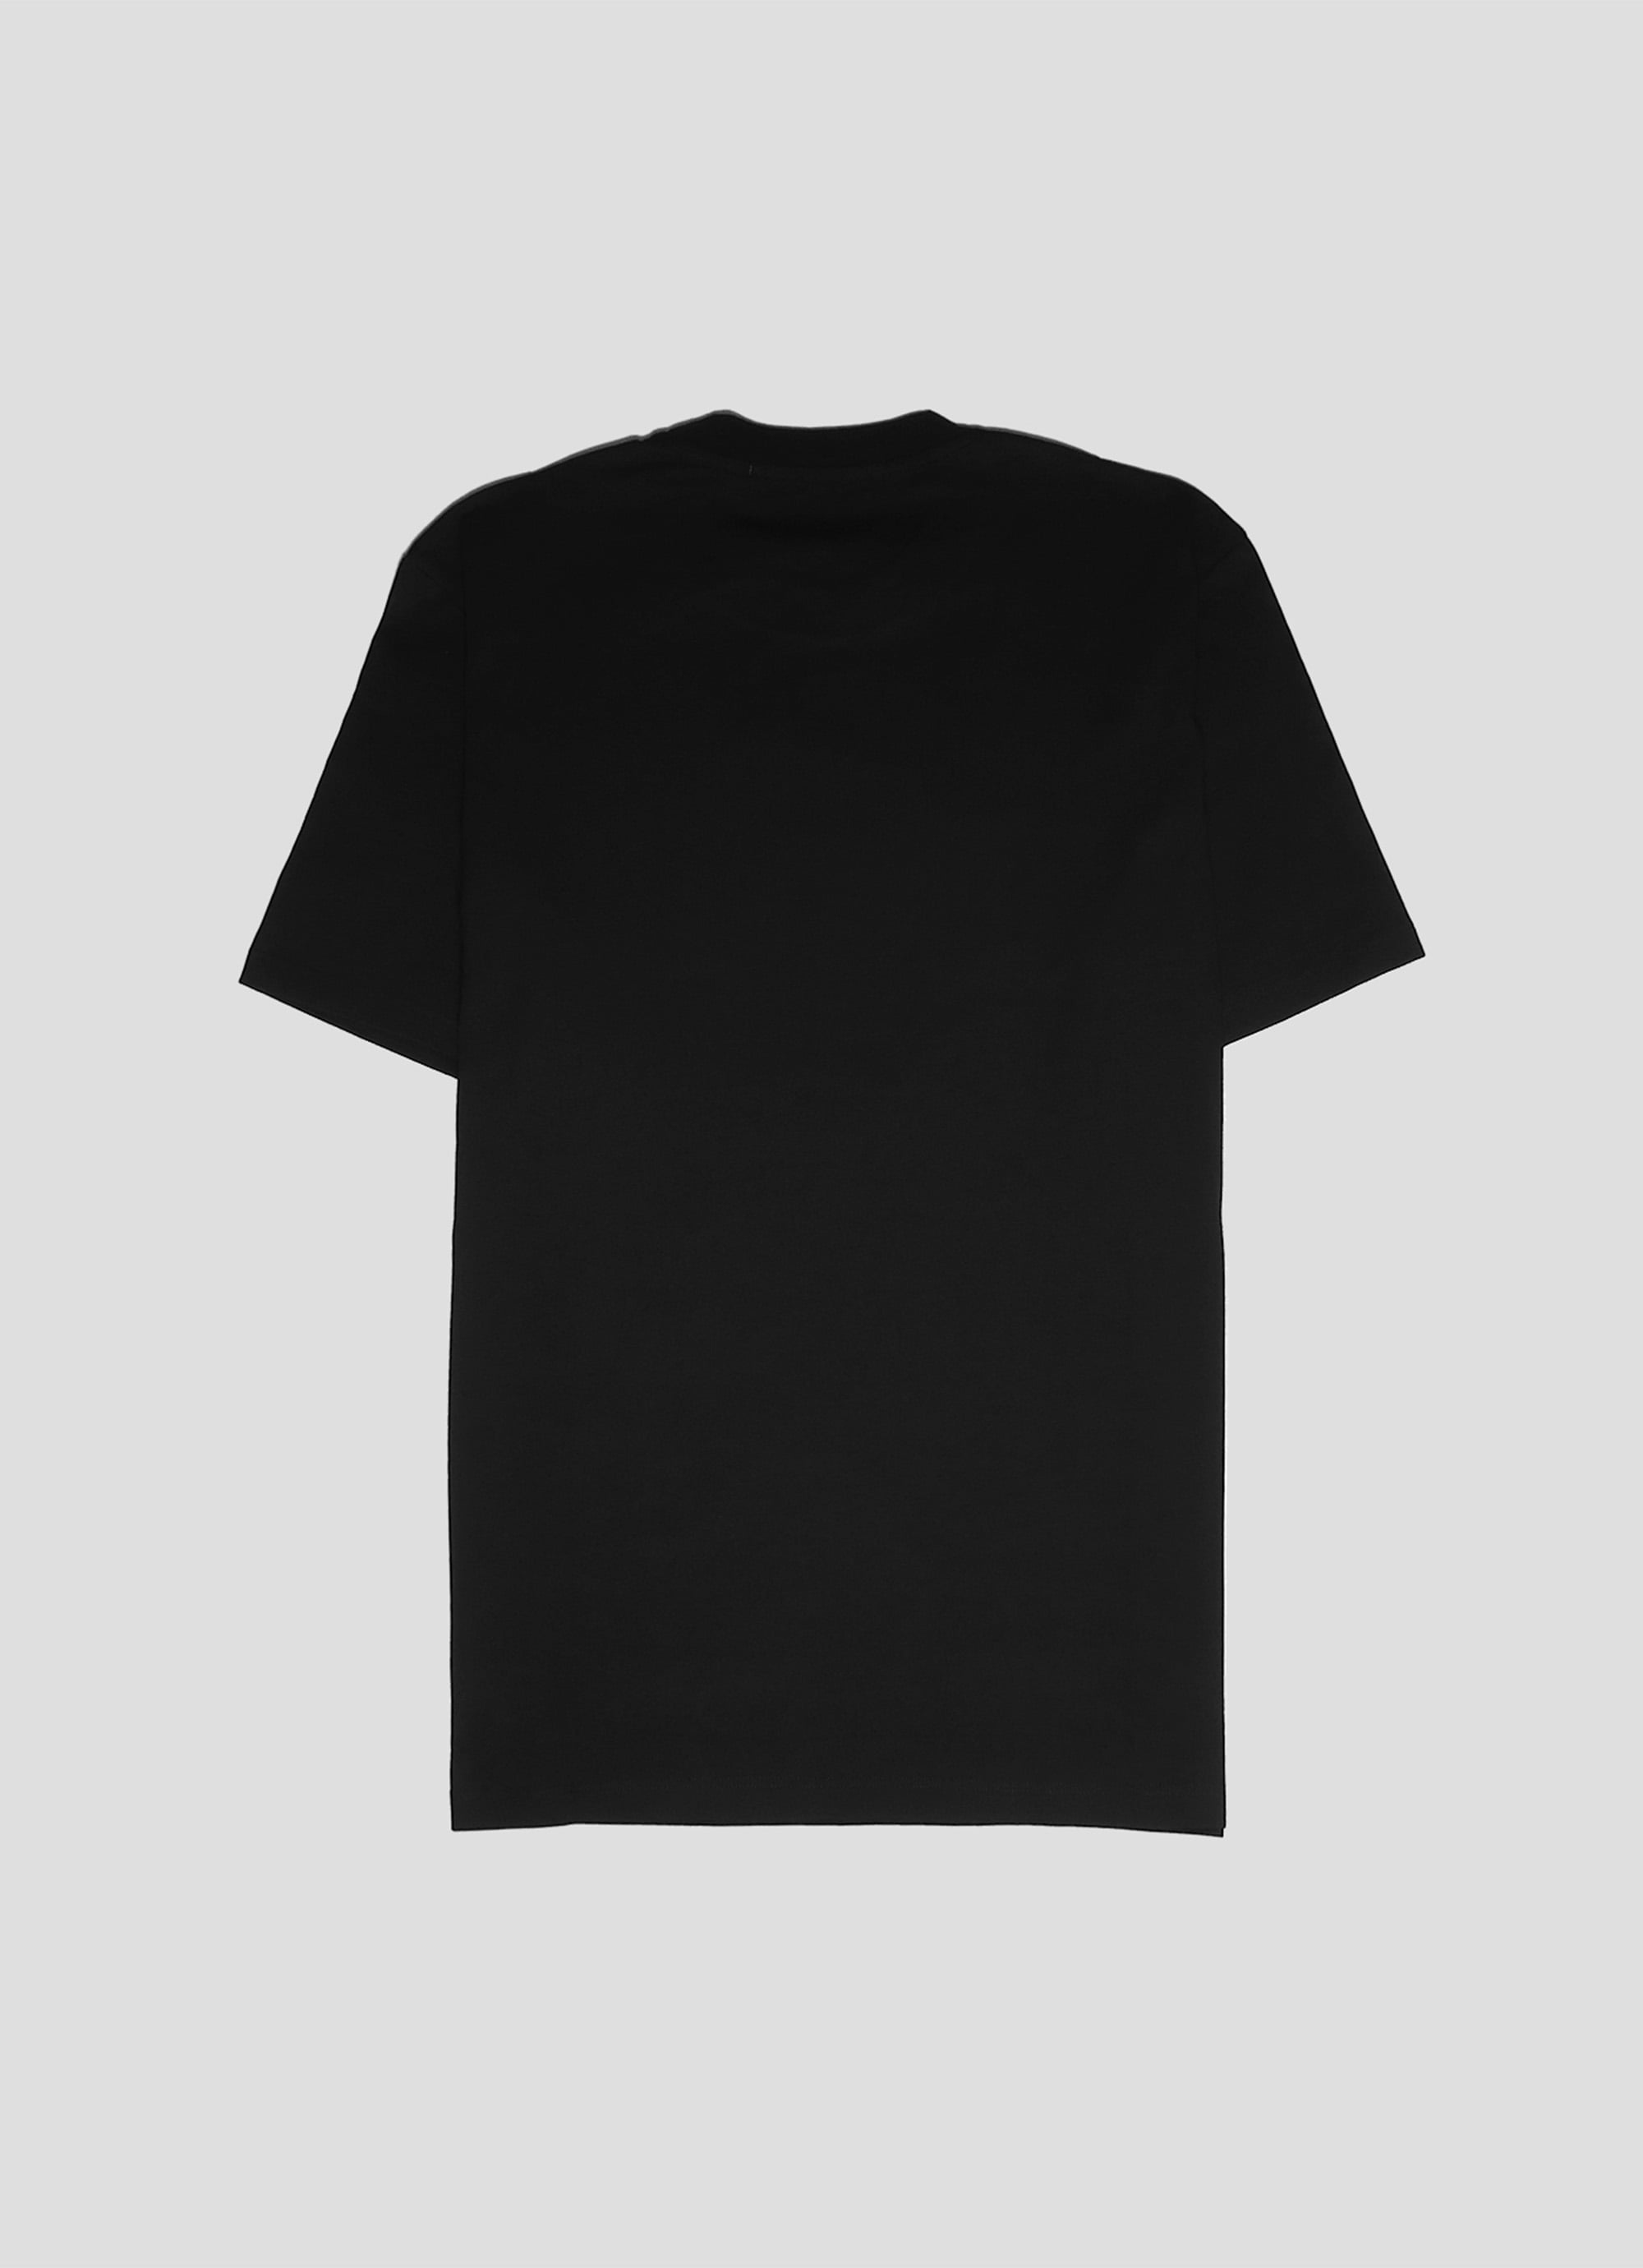 MSGM ブラッシュロゴTシャツ【EXCLUSIVE】 詳細画像 ブラック×ブラック 2